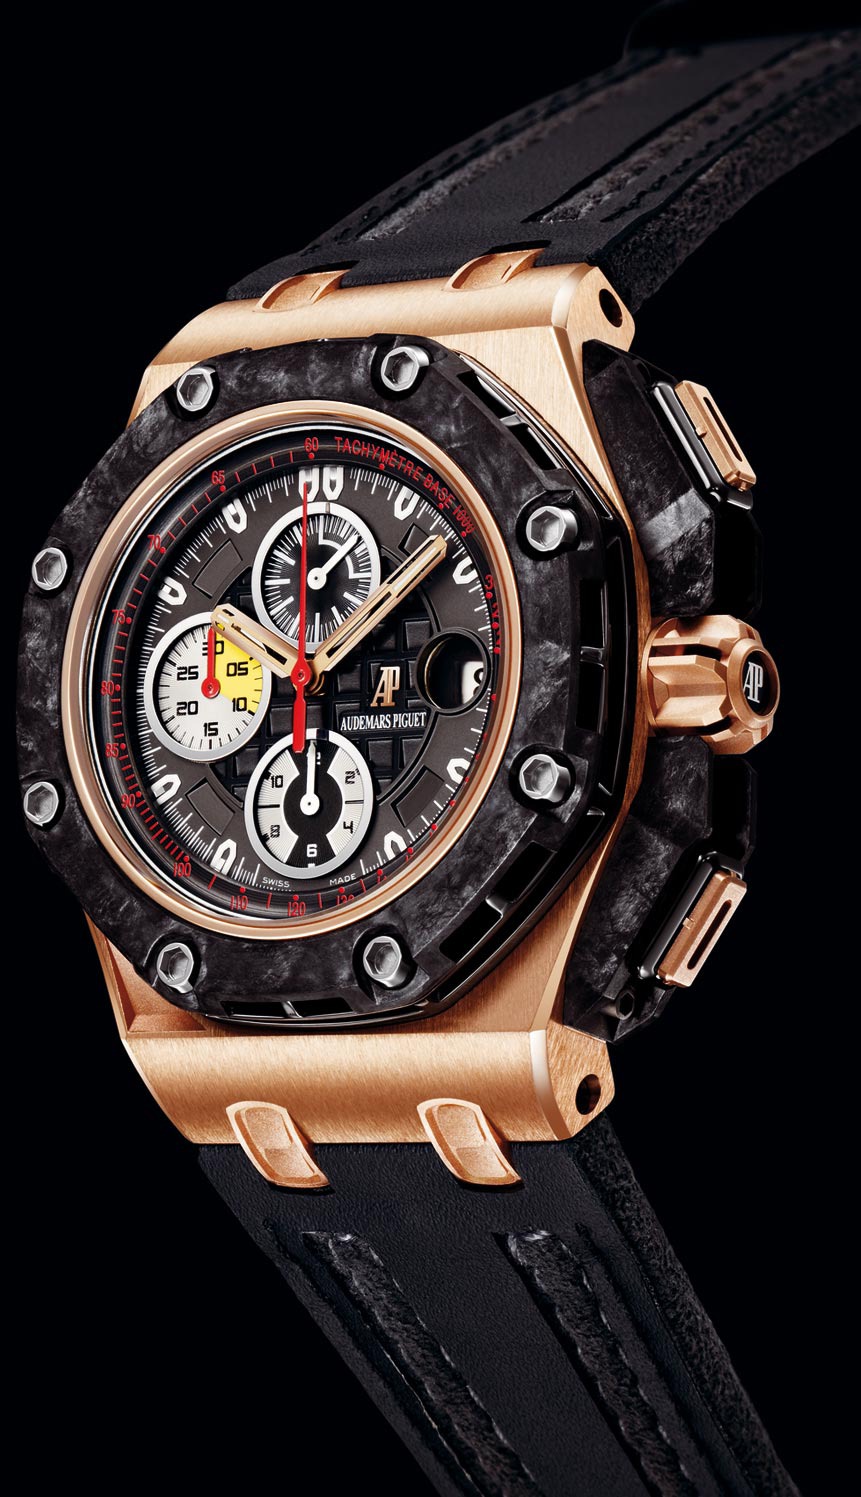 Audemars Piguet Royal Oak Offshore Grand Prix Pink Gold watch REF: 26290RO.OO.A001VE.01